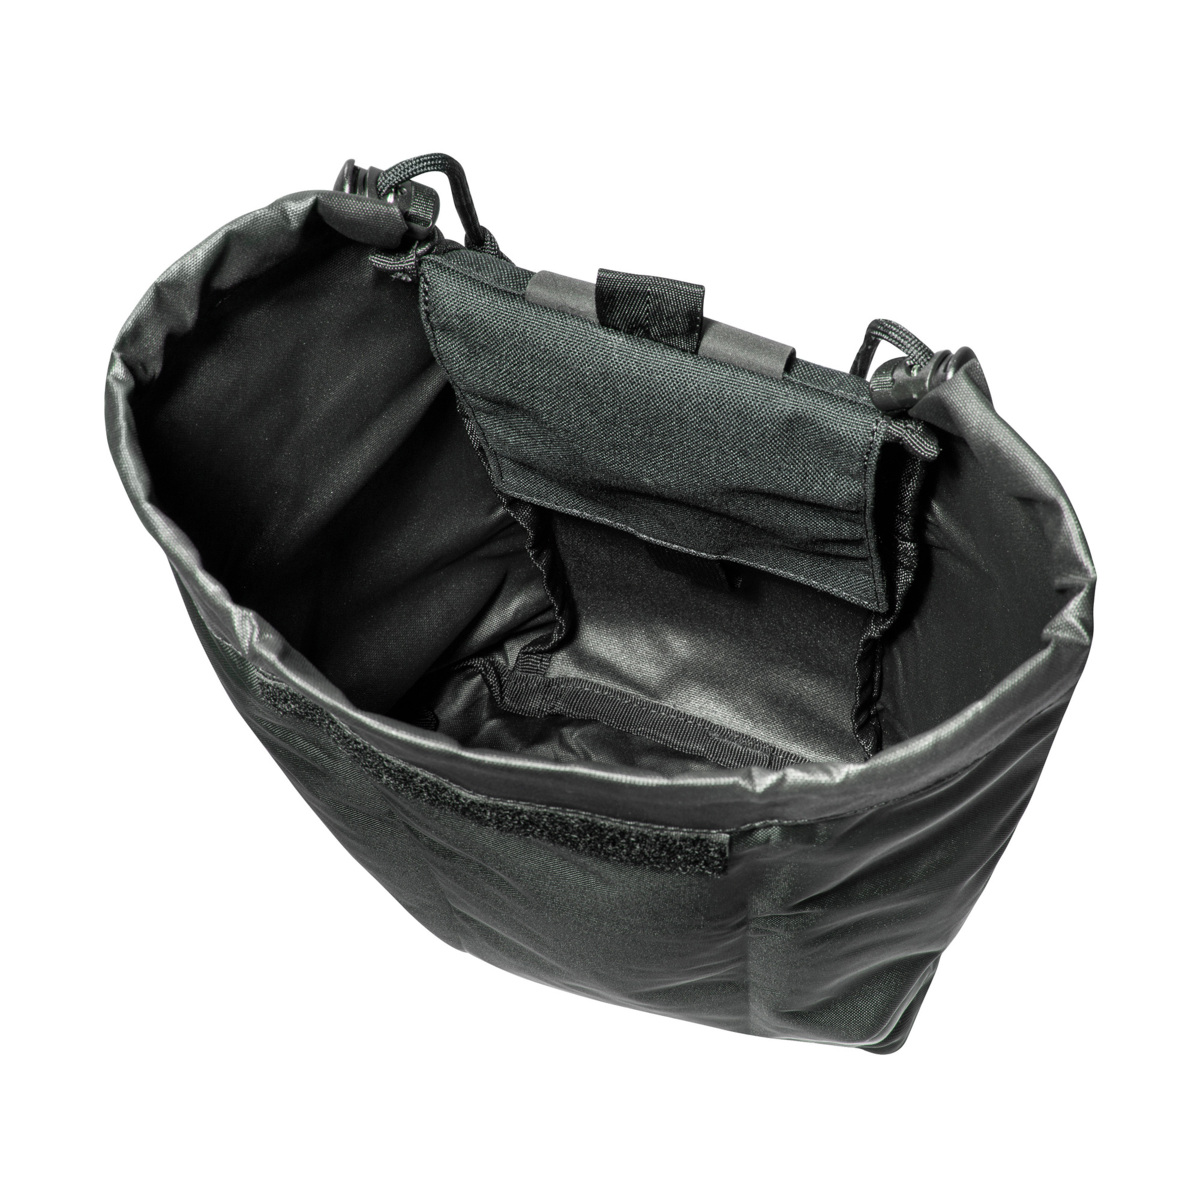 TT Dump Pouch MKII - Folding Throw-Bag